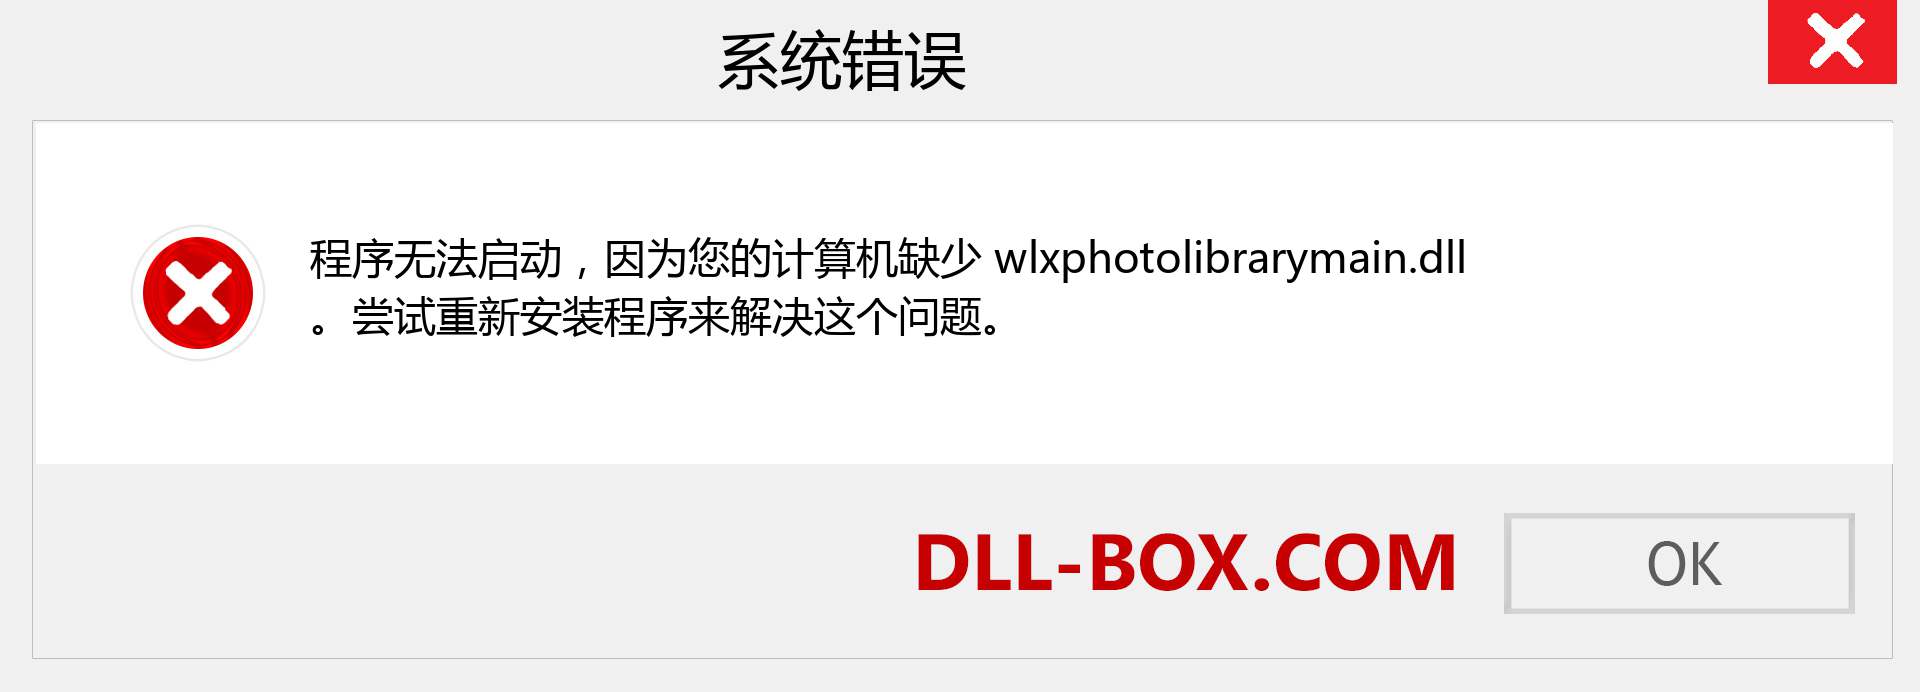 wlxphotolibrarymain.dll 文件丢失？。 适用于 Windows 7、8、10 的下载 - 修复 Windows、照片、图像上的 wlxphotolibrarymain dll 丢失错误